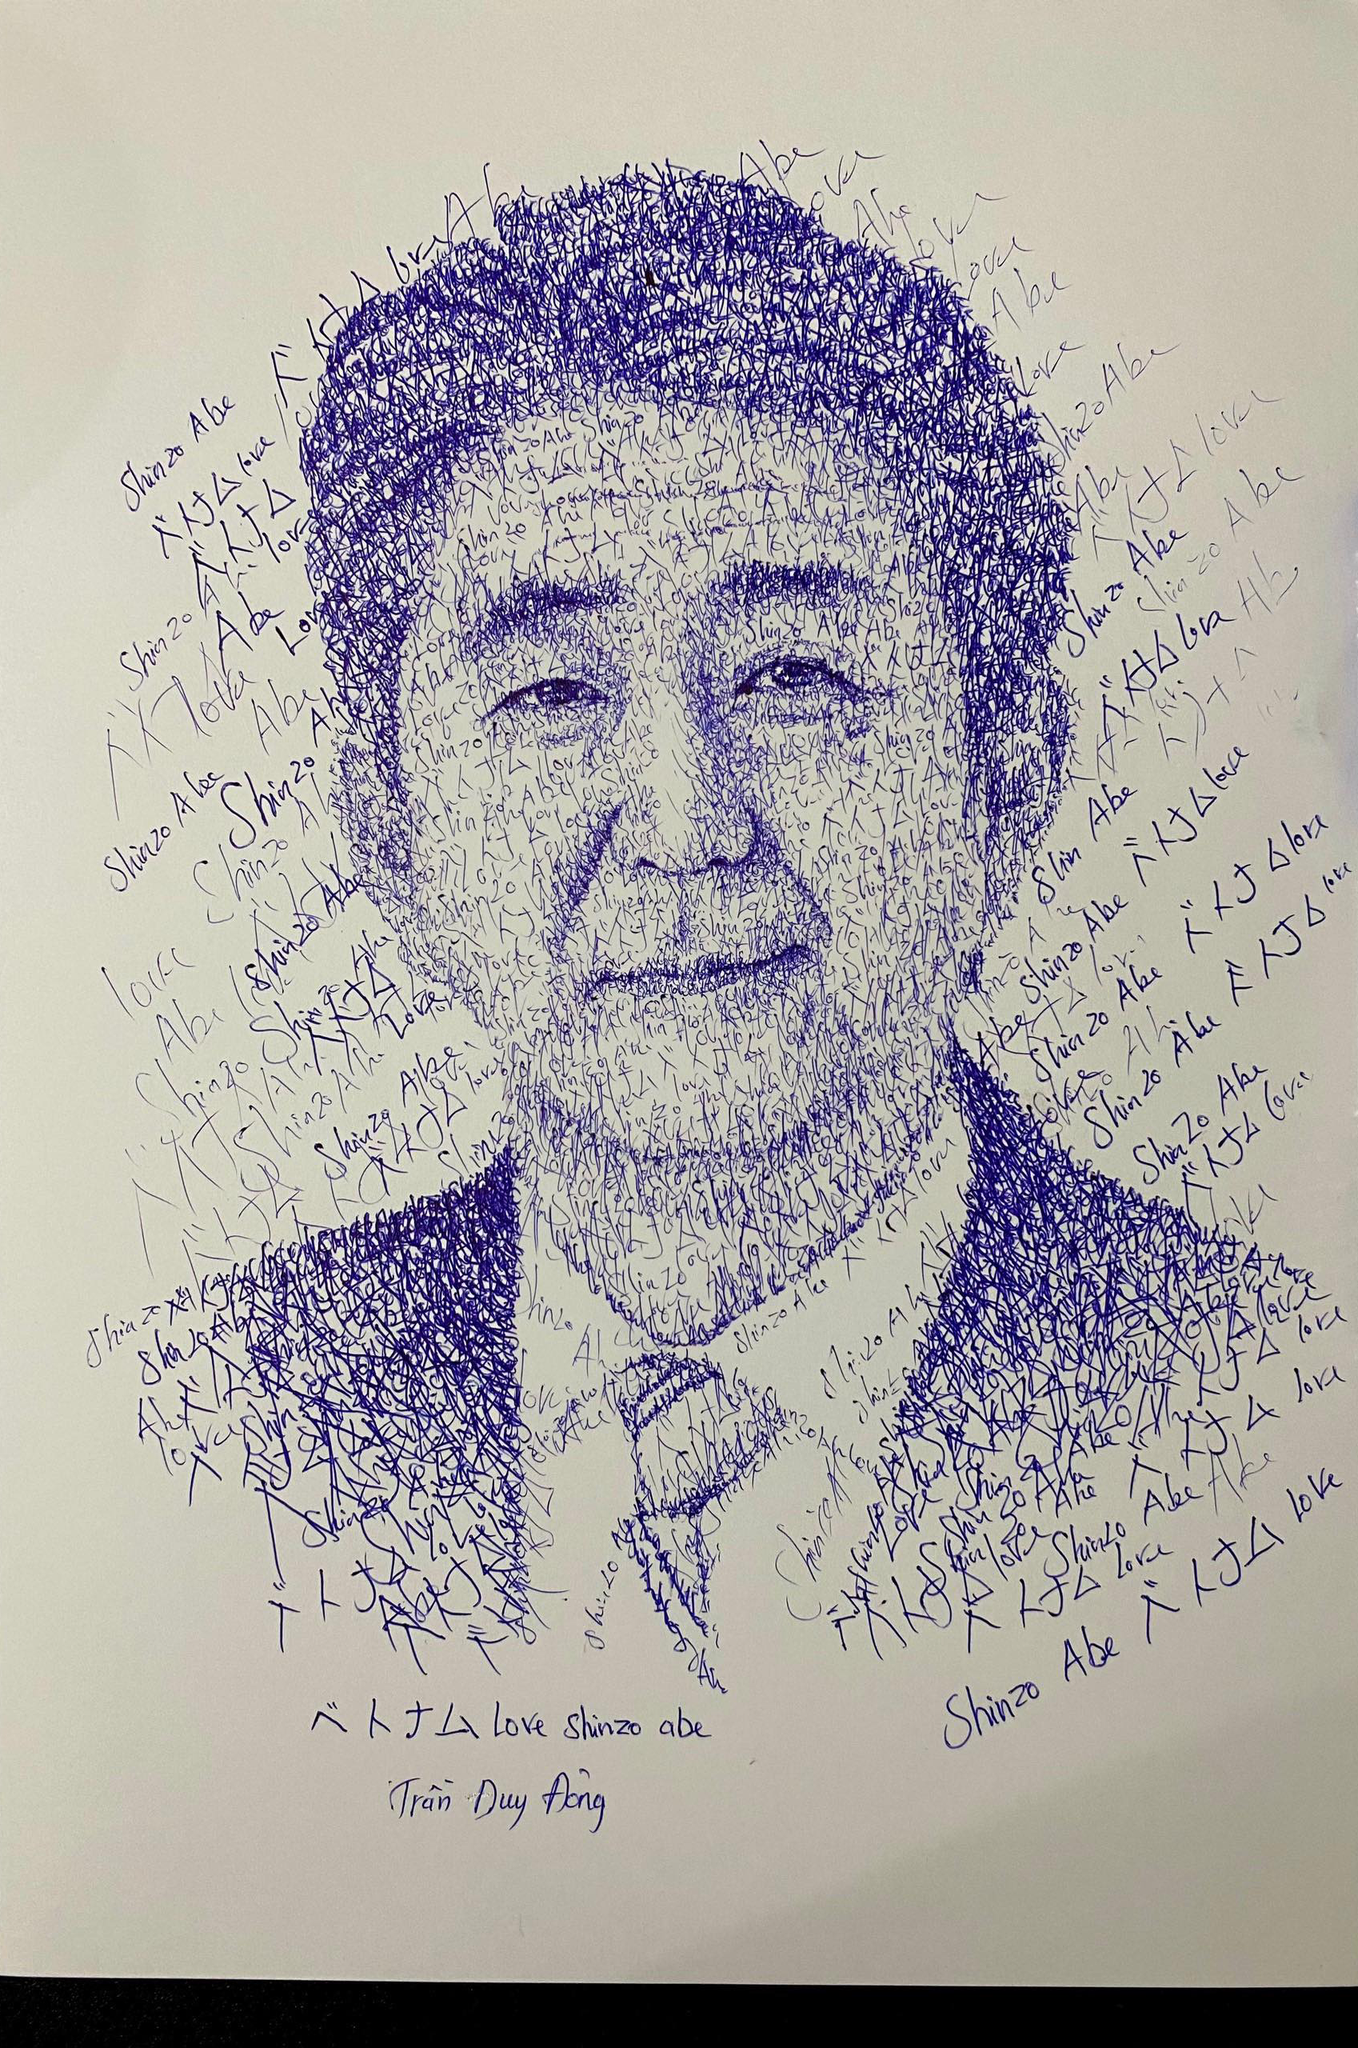 Chân dung Shinzo Abe: Bức chân dung Shinzo Abe mang lại cho chúng ta cái nhìn đầy tính văn hoá của người Nhật. Từ nét vẽ đến tính cách của người lãnh đạo, tất cả đều được thể hiện rõ ràng và xác thực. Nếu bạn đang tìm kiếm một nét độc đáo trong bức chân dung, đây chắc chắn là một lựa chọn phù hợp.